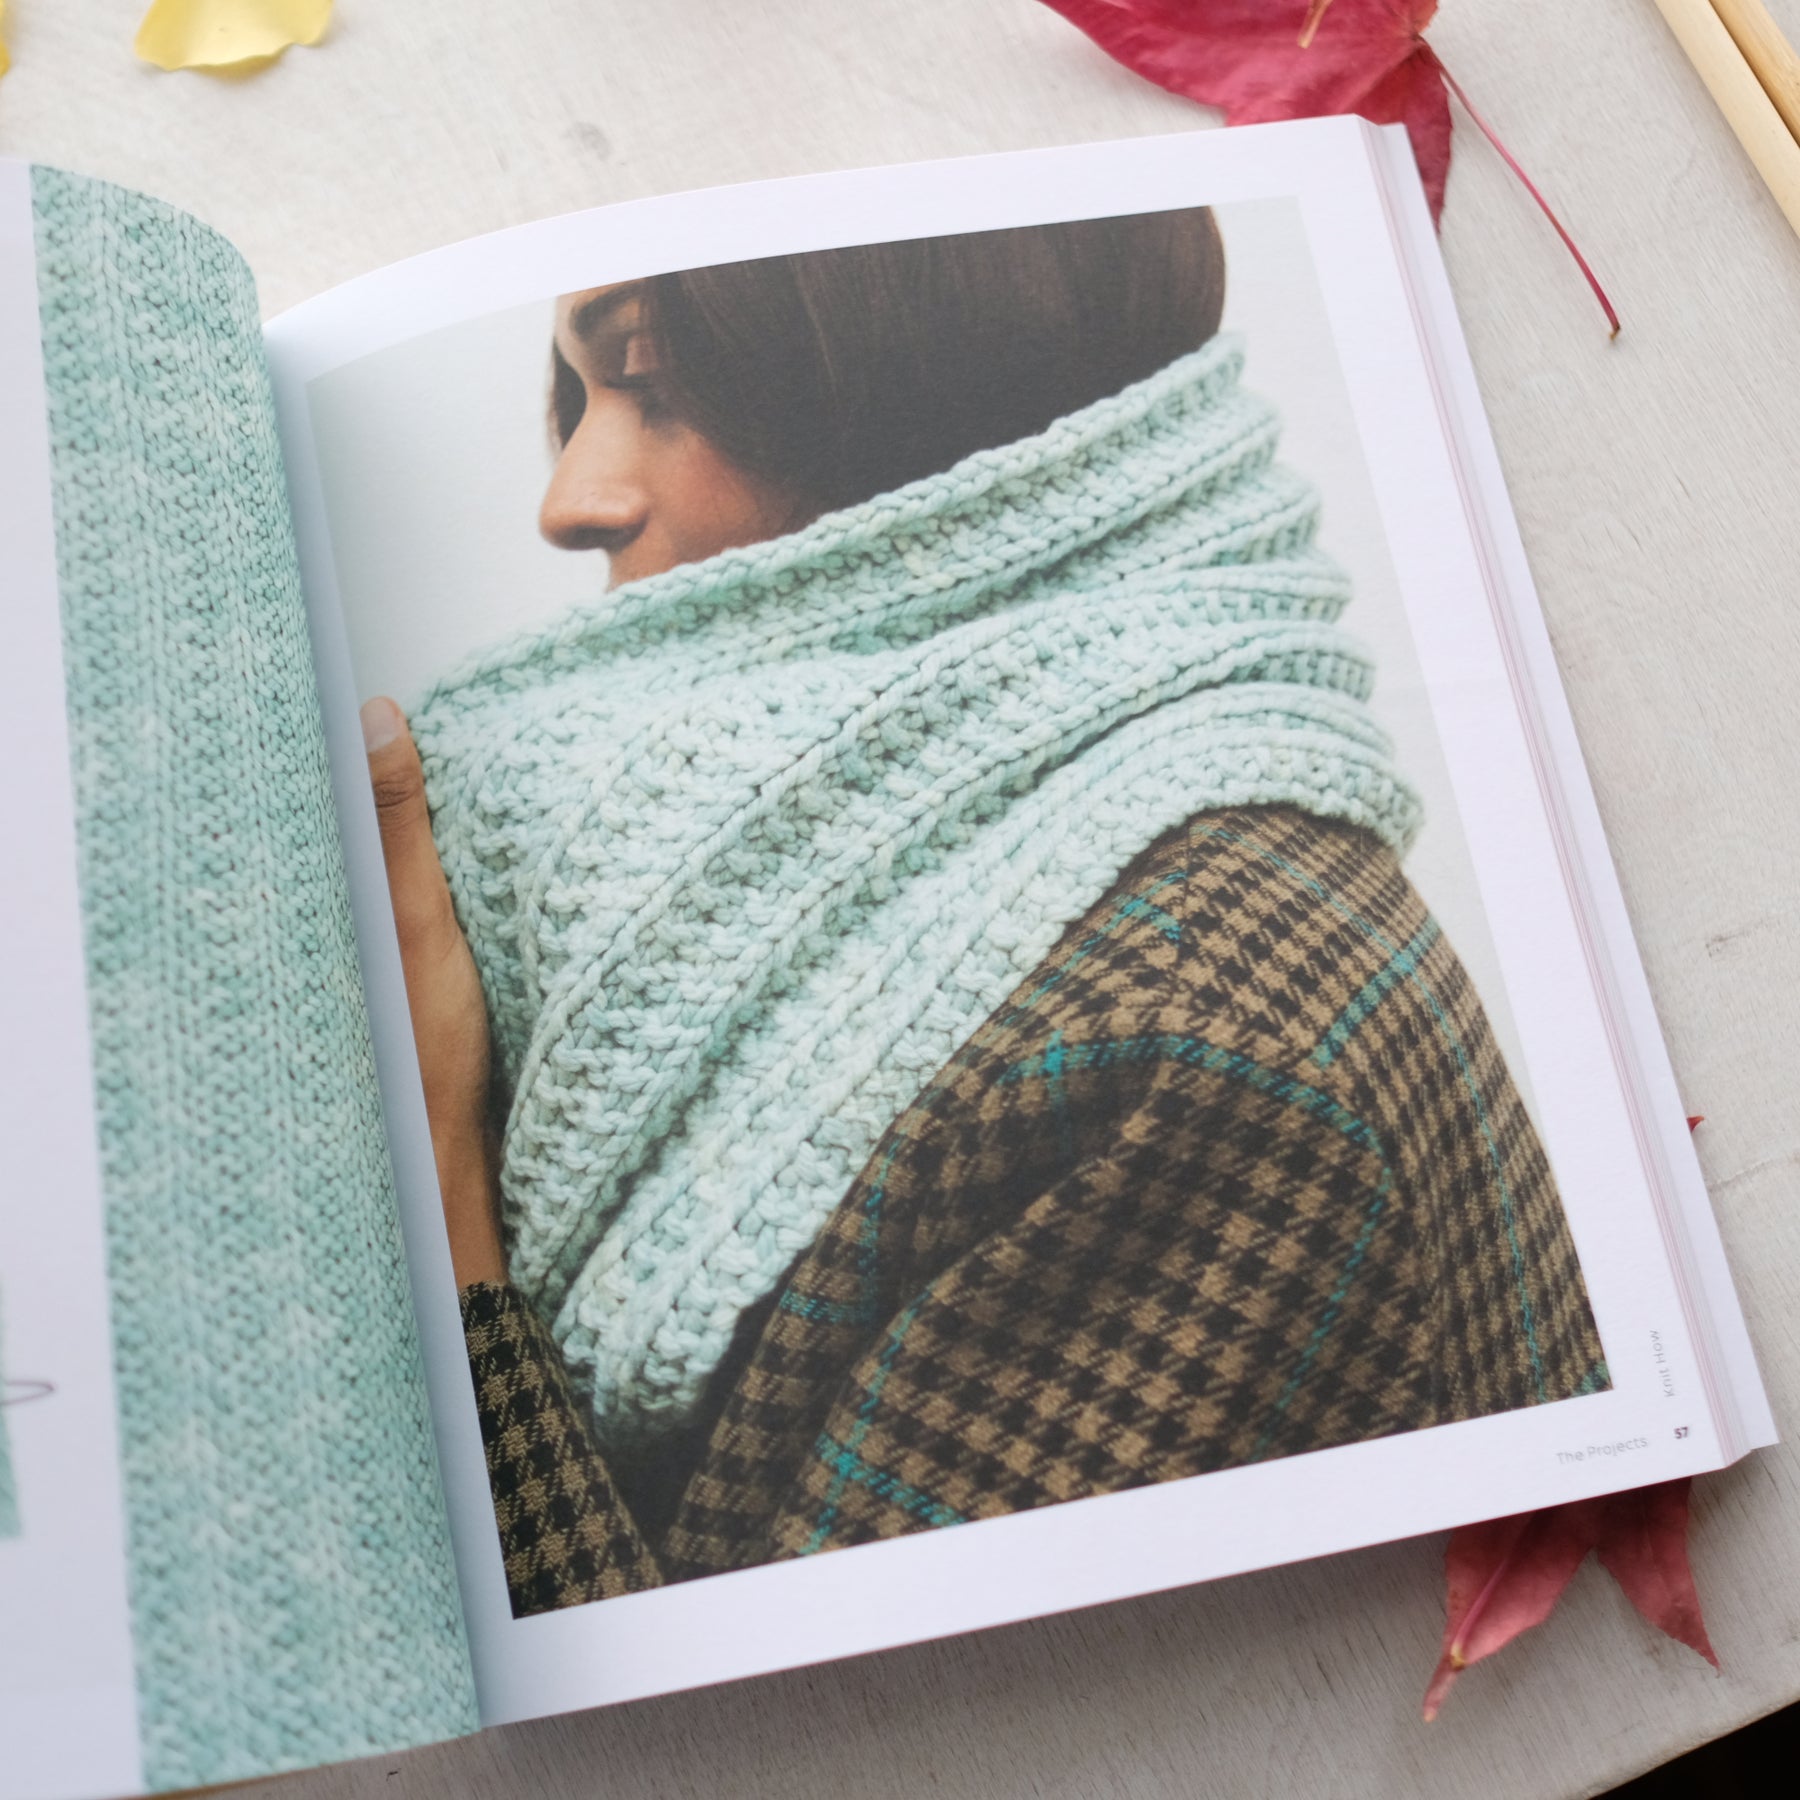 Knitting Intro Kit